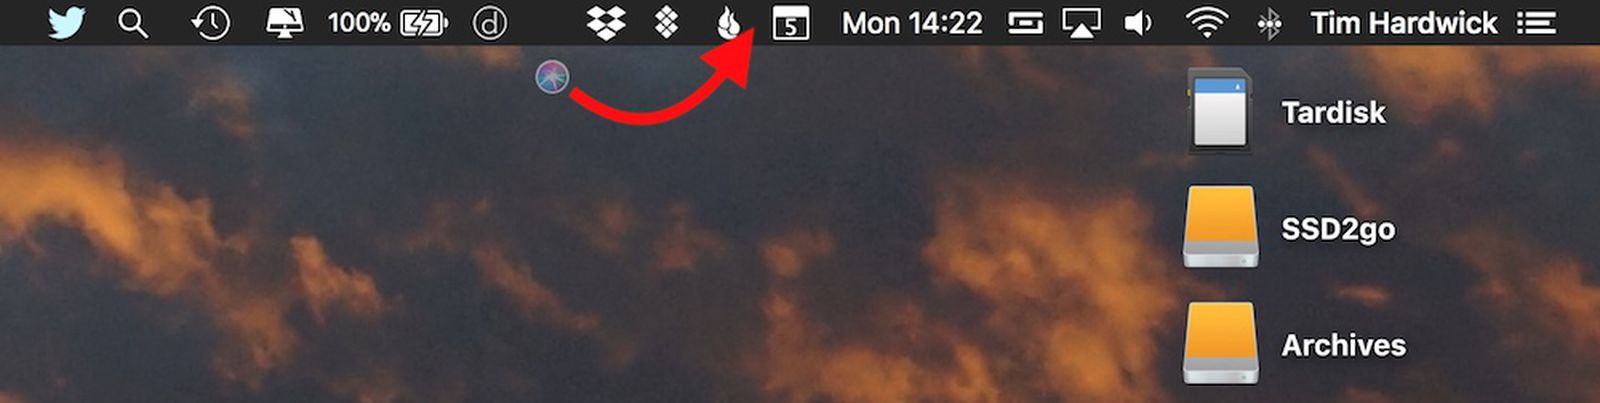 Mac Status Bar App Removal Showes Cursur Location